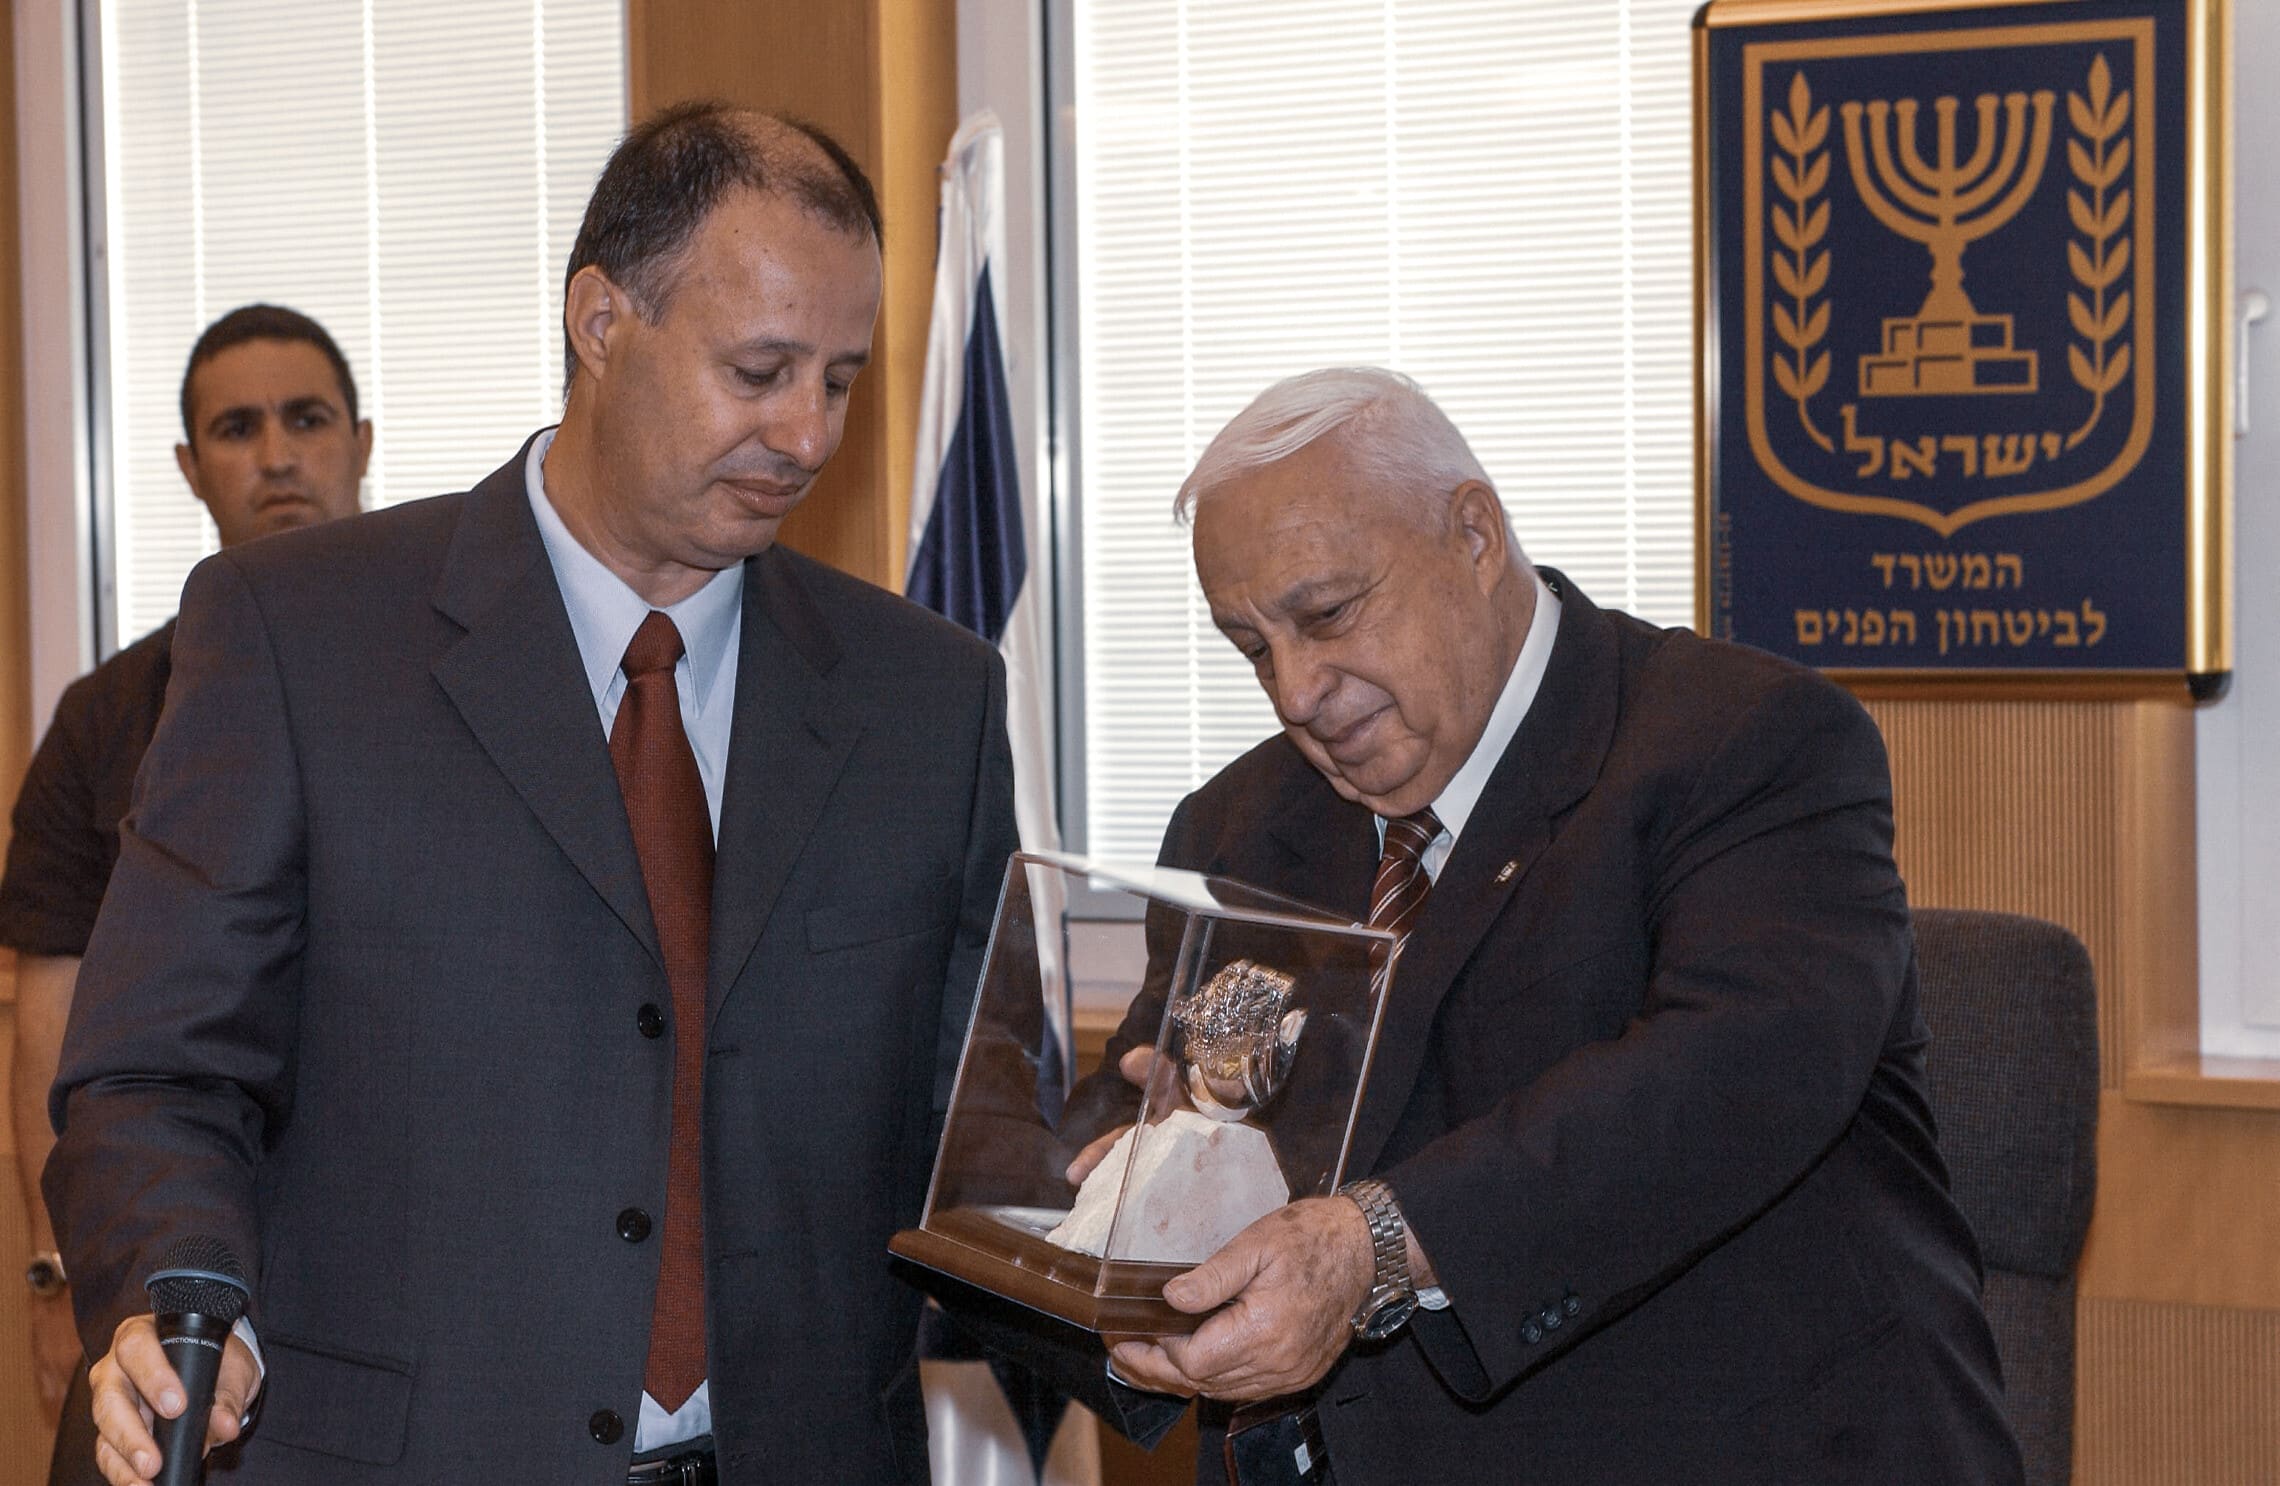 השר לביטחון פנים צחי הנגבי מעניק שי לראש הממשלה אריאל שרון בעת ביקורו במשרד לביטחון פנים בירושלים, 5 באוגוסט 2003 (צילום: אבי אוחיון/לע&quot;מ)